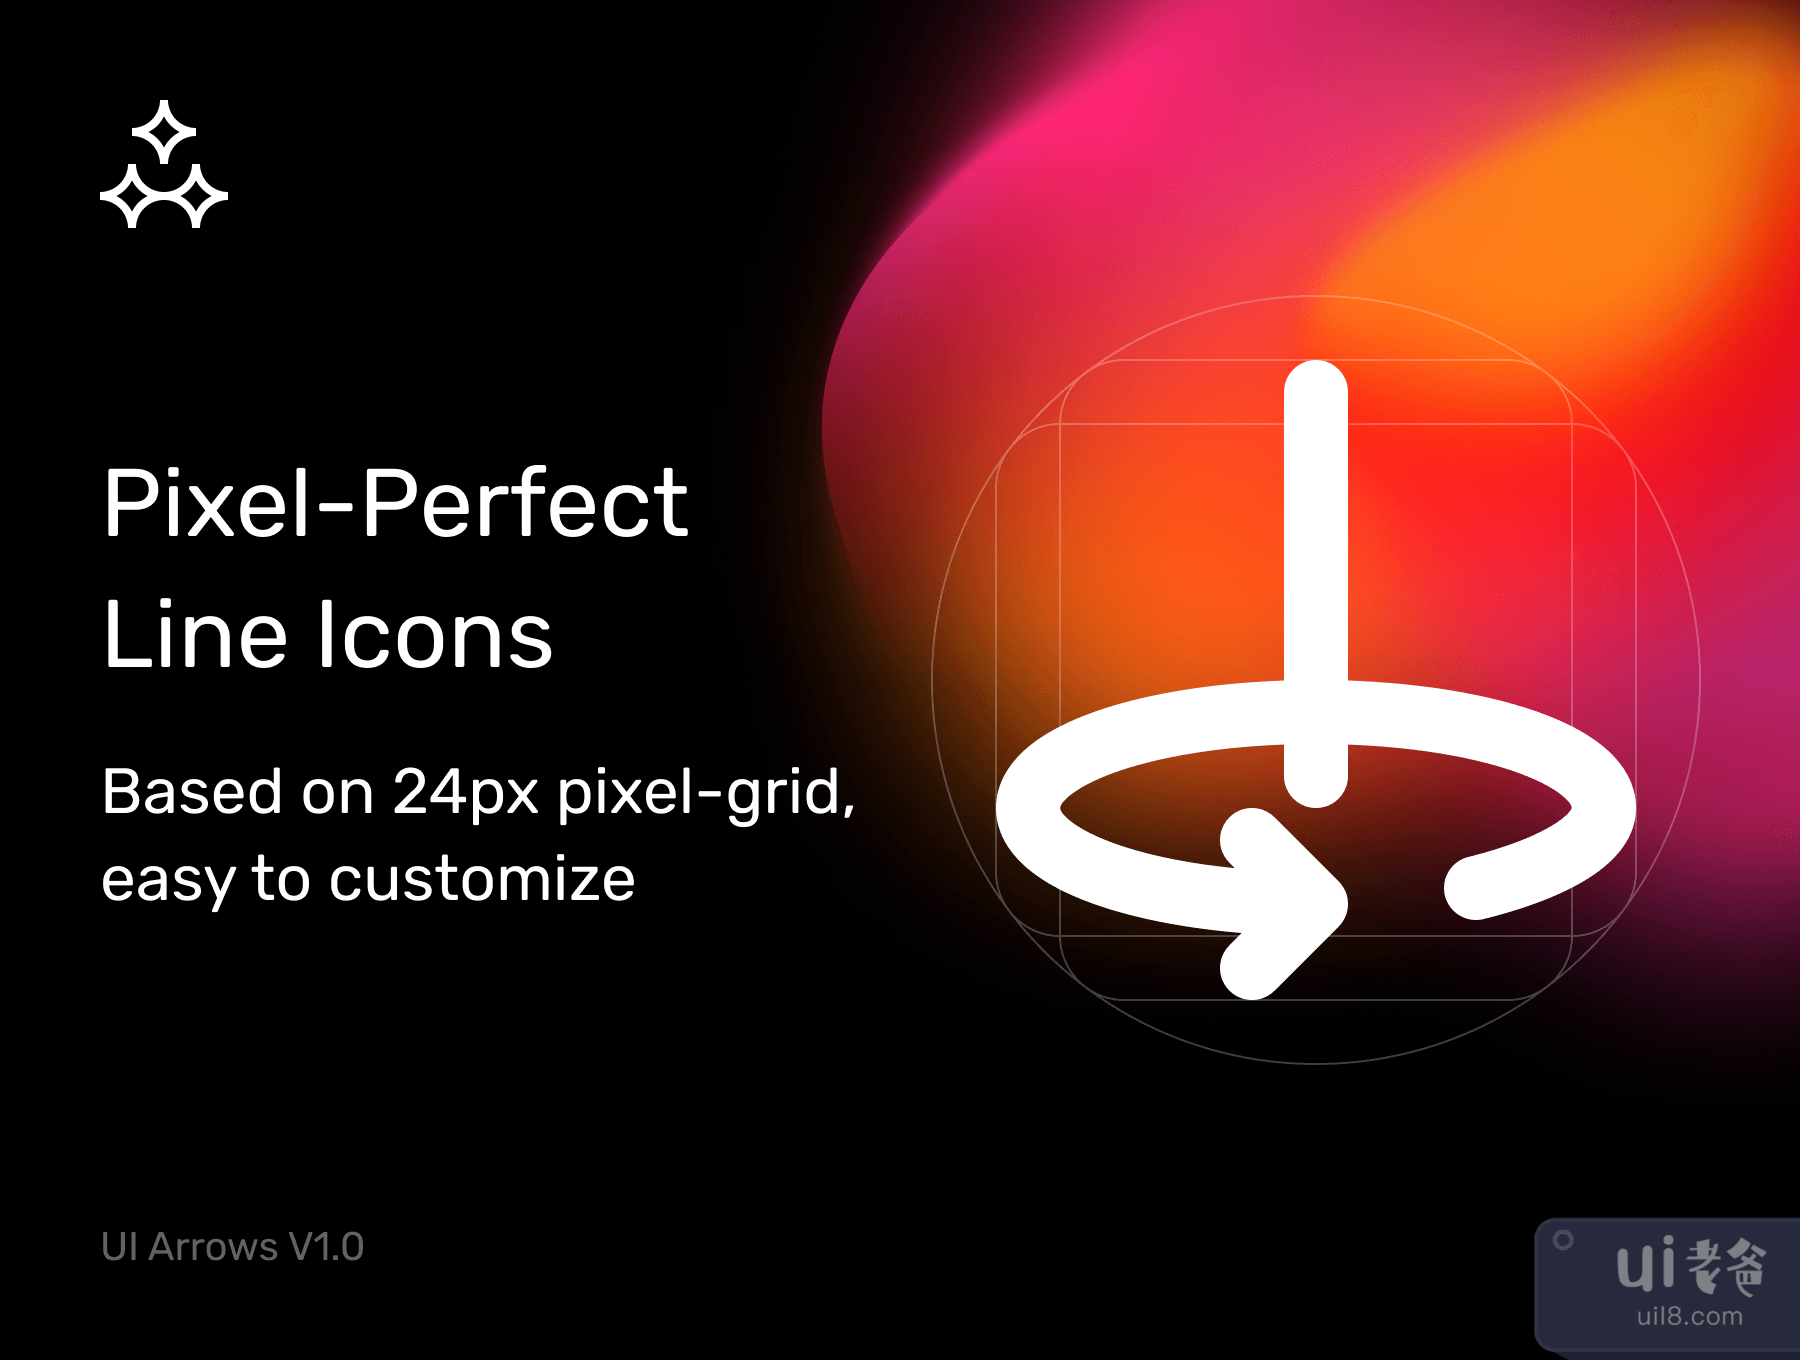 箭头 V1.0 - 完美像素线条图标 (Arrows V1.0 — Pixel-Perfect Line Icons)插图